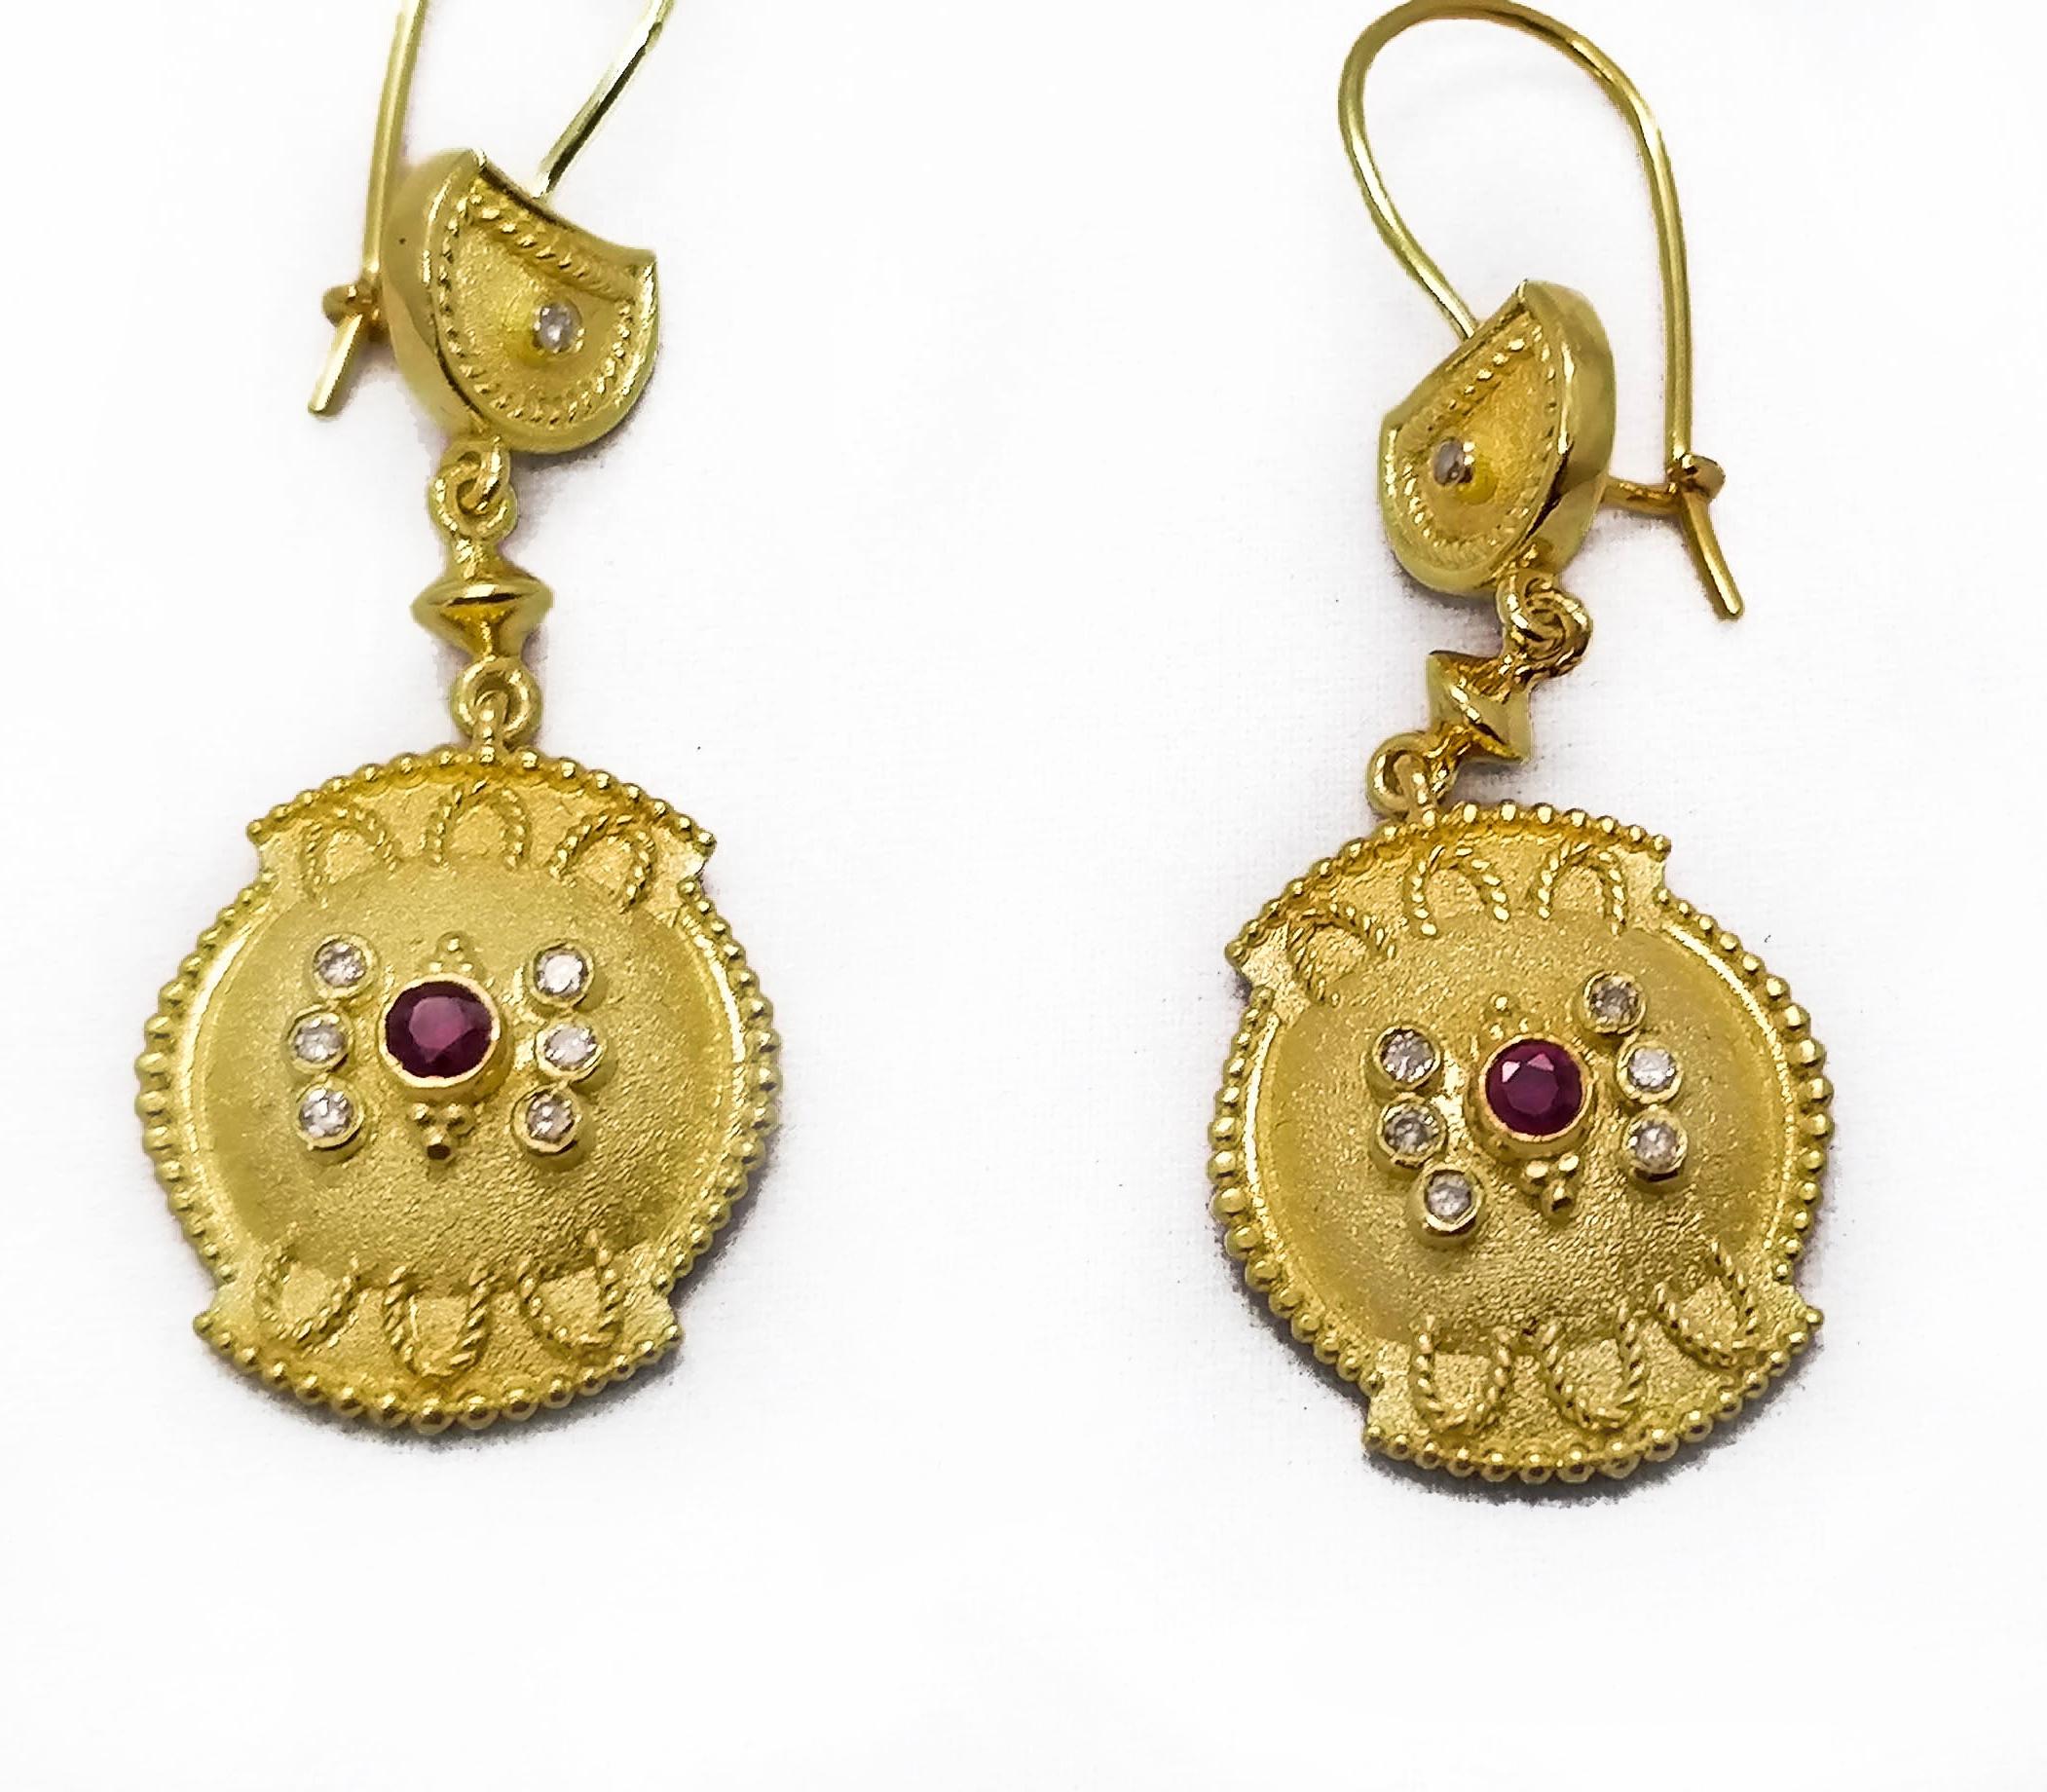 Diese Designer-Ohrringe von S.Georgios sind aus 18 Karat Gelbgold handgefertigt und mit mikroskopischer Granulation im Stil der byzantinischen Ära verziert. Dieses atemberaubende Paar Ohrhänger besteht aus 2 natürlichen Rubinen im Brillantschliff